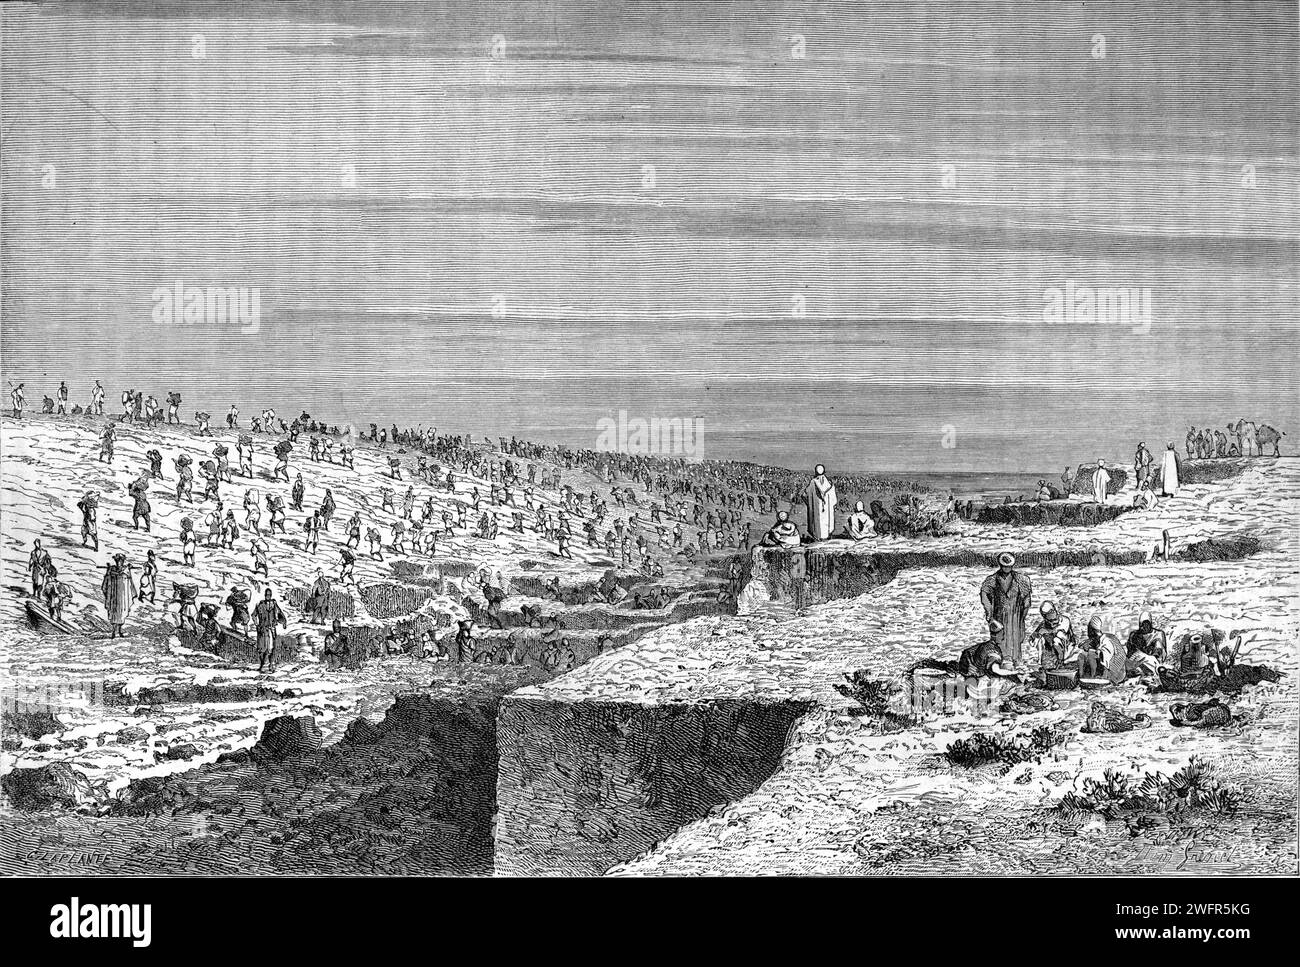 Bau des Suez-Kanals in Ägypten. Vintage oder historische Gravur oder Illustration 1863 Stockfoto